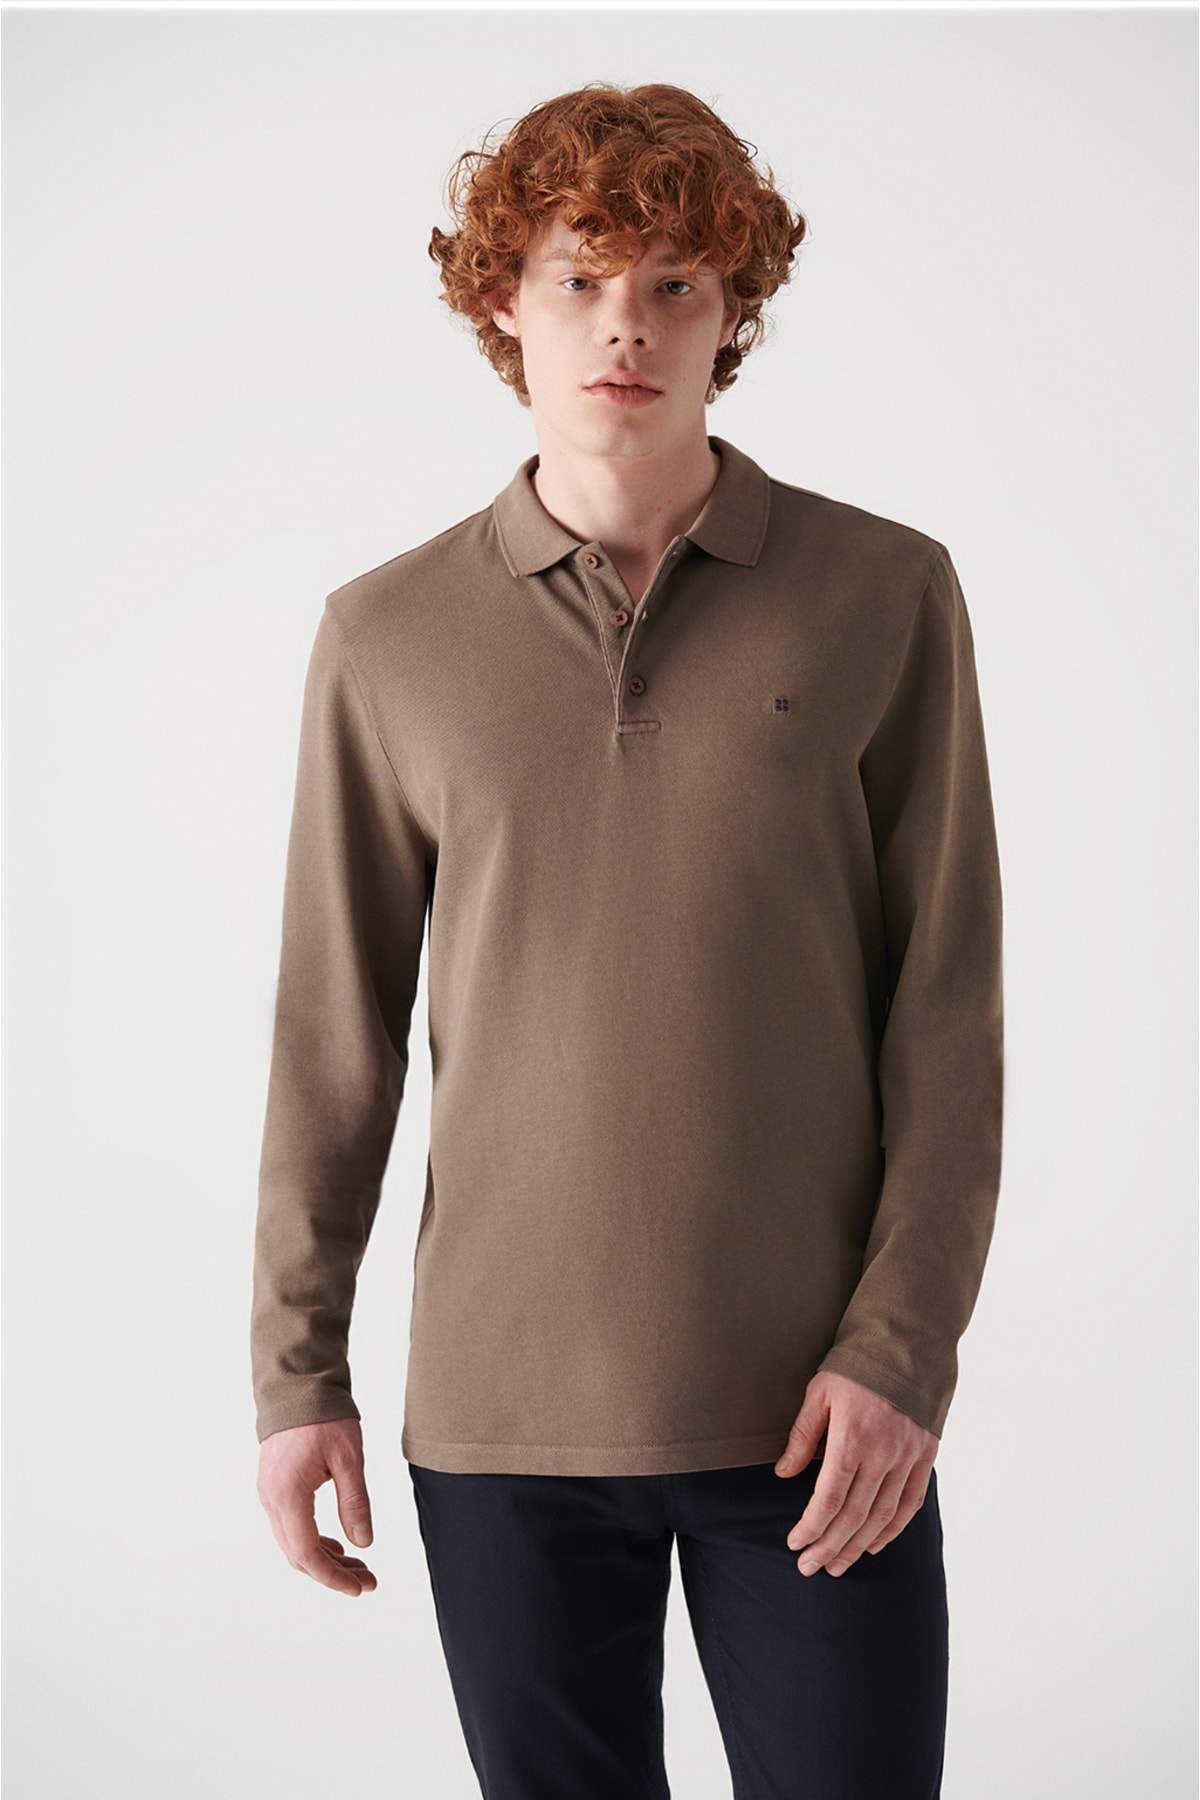 khaki-polo-neck-100-cotton-sweatshirt